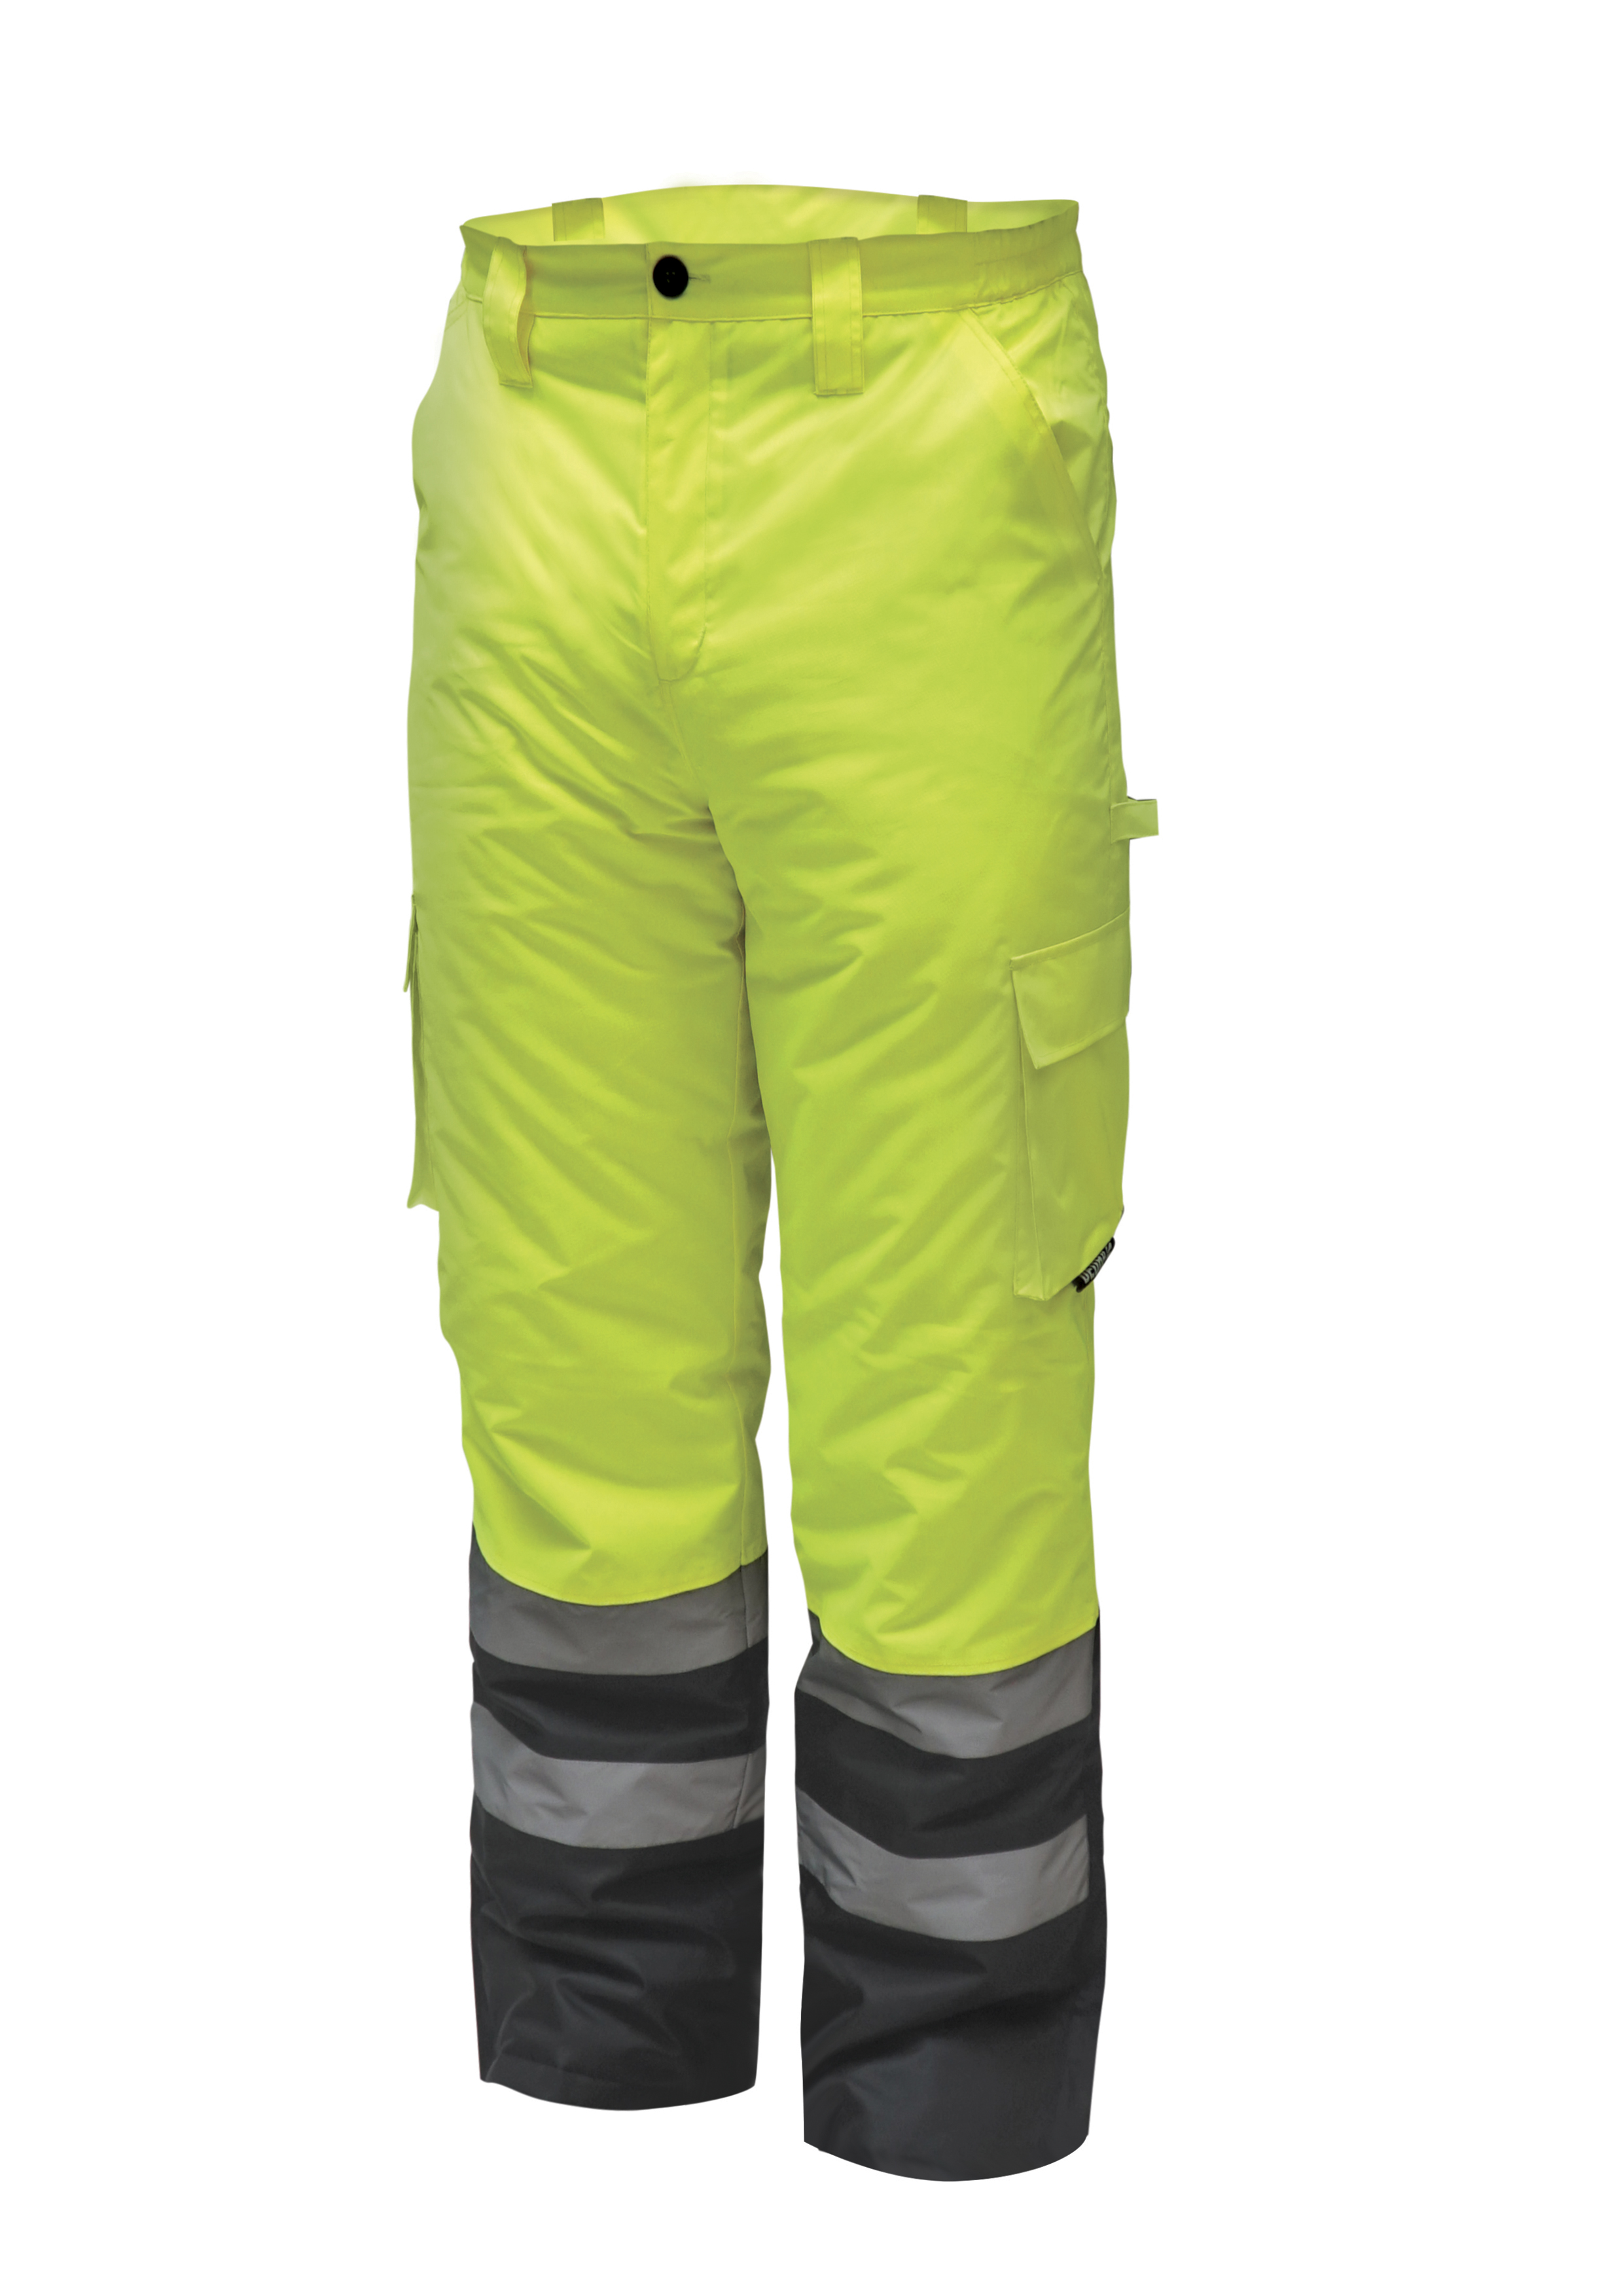 Reflexní zateplené kalhoty vel. XL, žluté DEDRA BH80SP1-XL + Dárek, servis bez starostí v hodnotě 300Kč